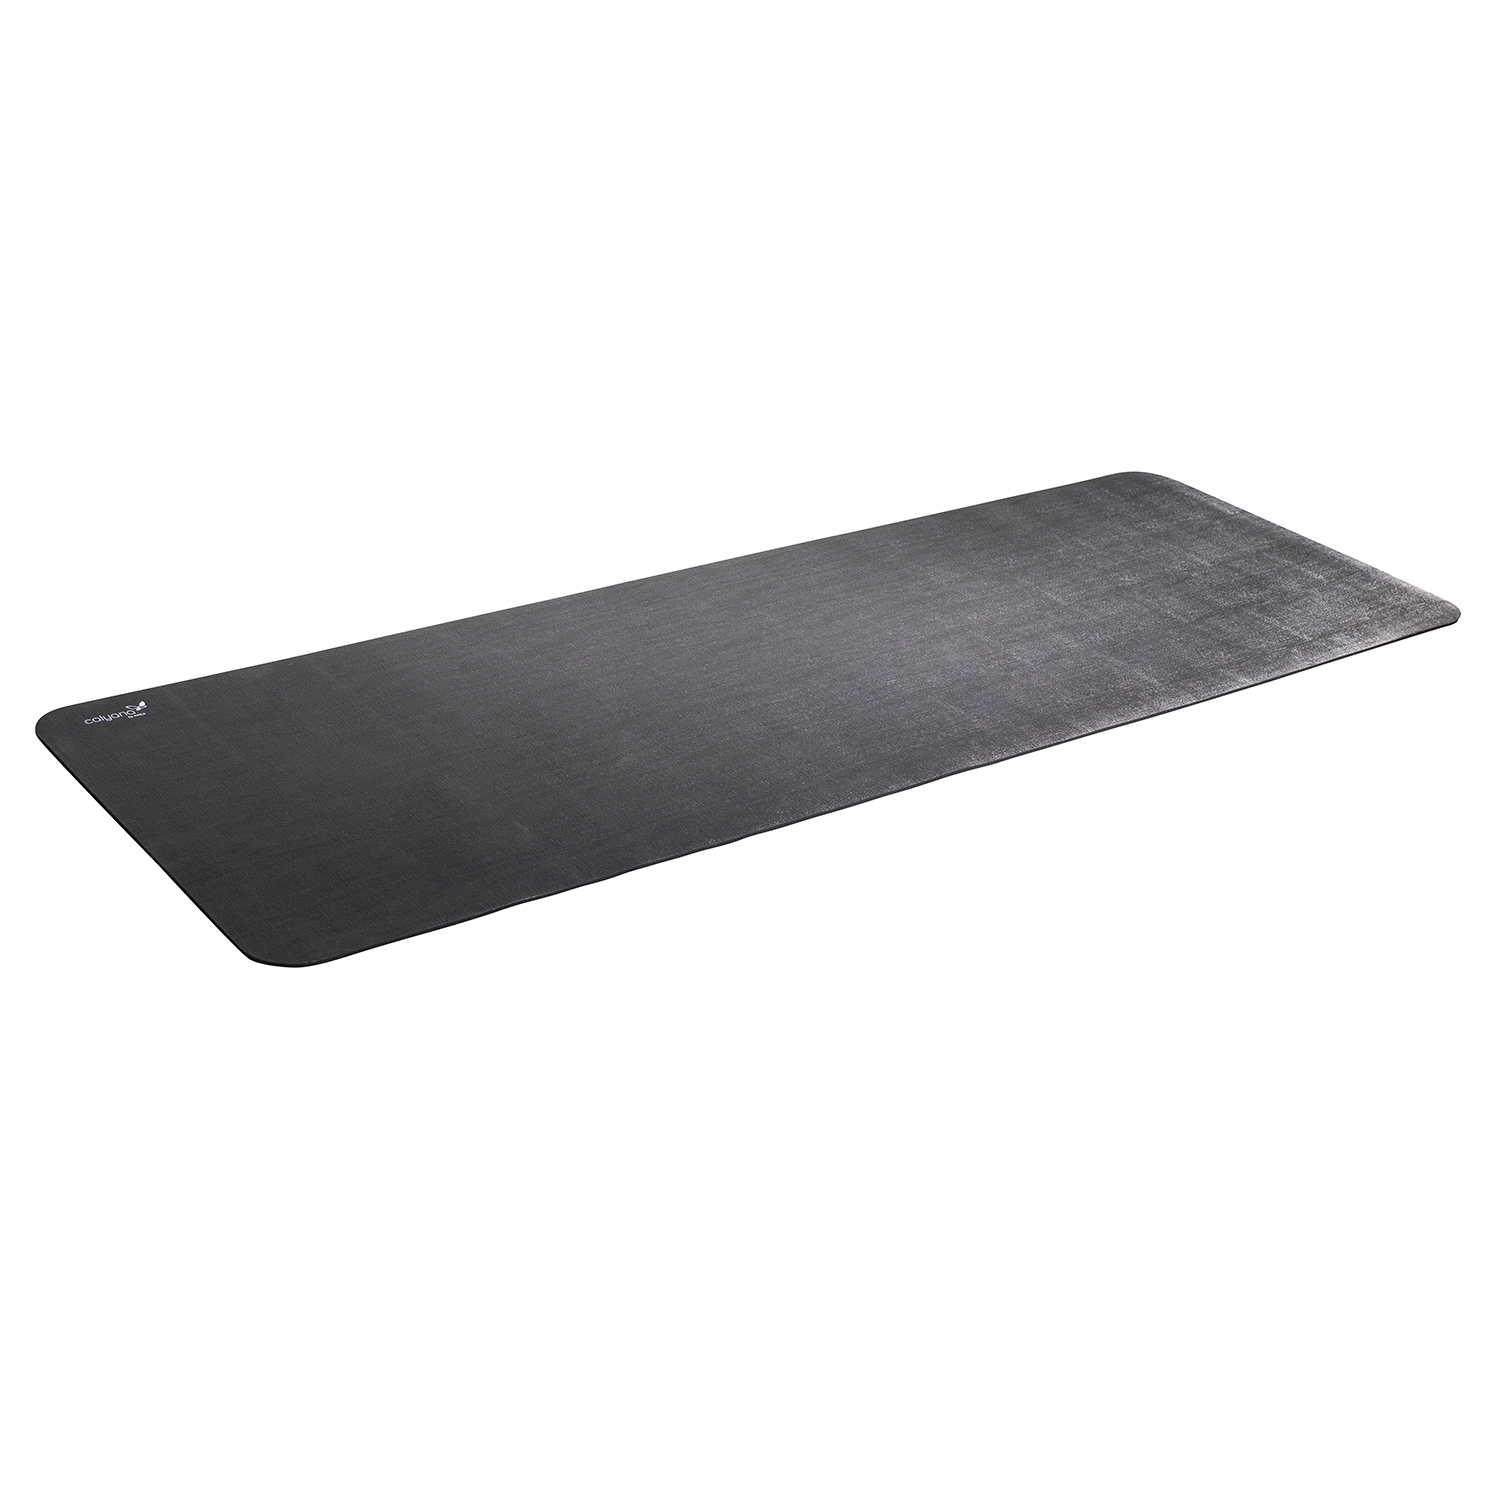 Airex tapis Calyana Professional Yoga - 185 x 66 x 0,68 cm - gris foncé